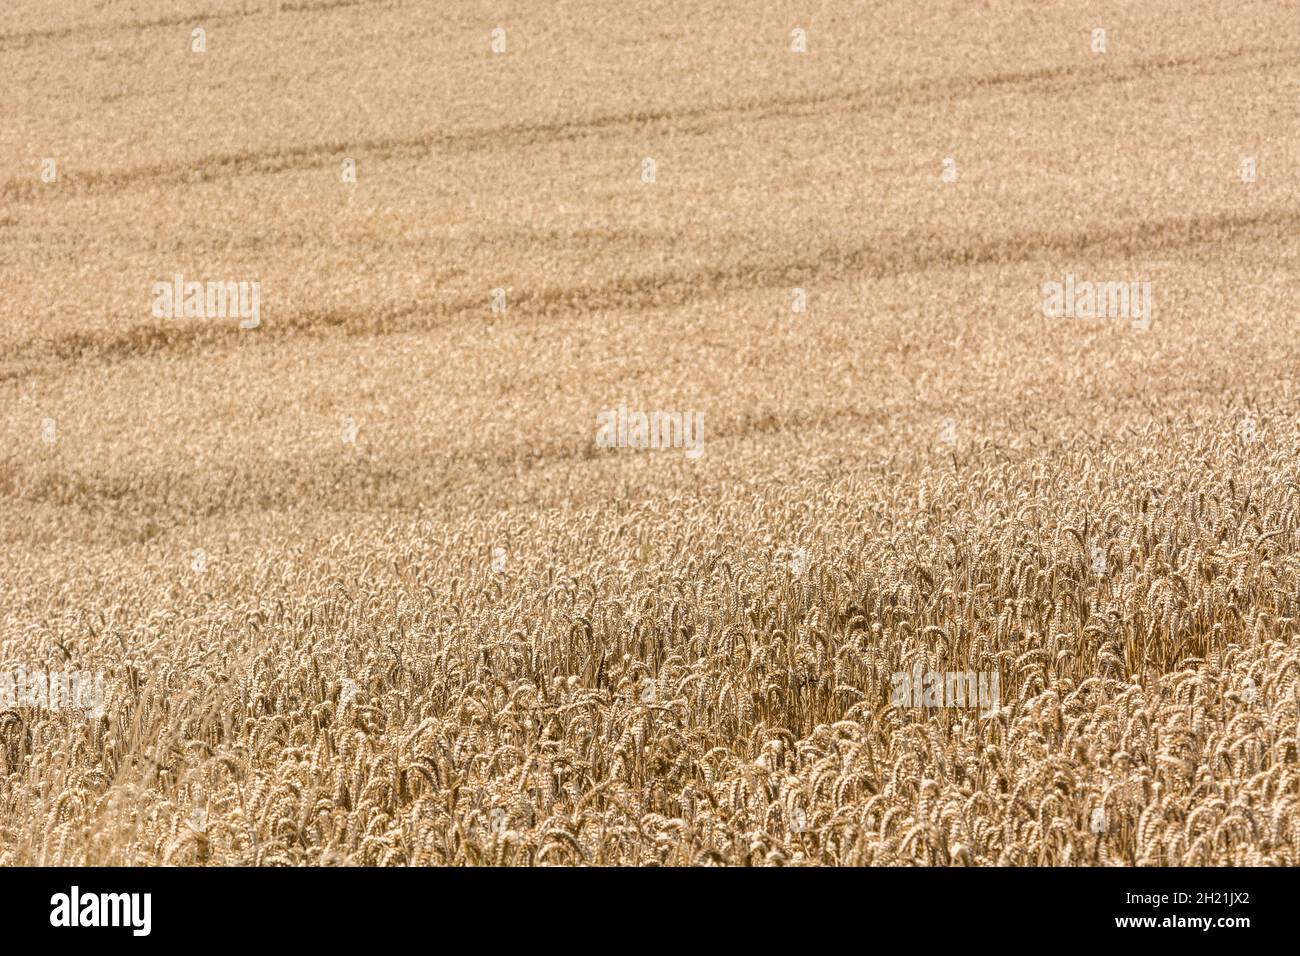 Reifenden Weizen Ernte warten. Fokus auf unteren Drittel des Bildes. Metapher für die Ernährungssicherheit/wachsenden Lebensmittel, Nahrungsmittel UK Stockfoto